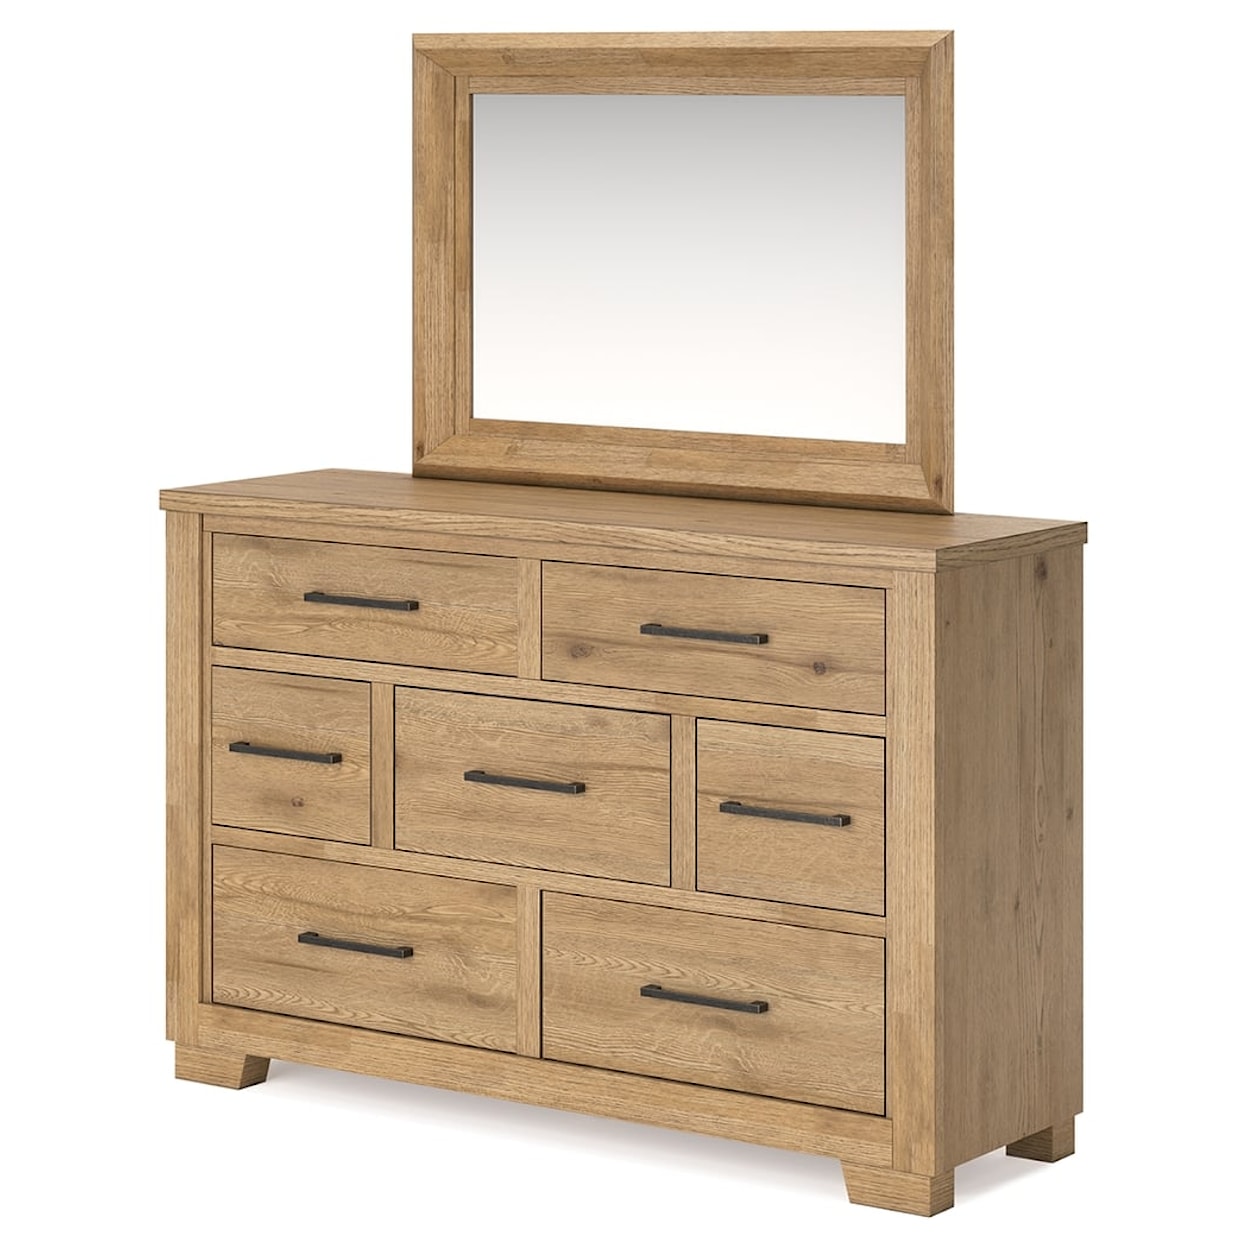 StyleLine Galliden Dresser and Mirror